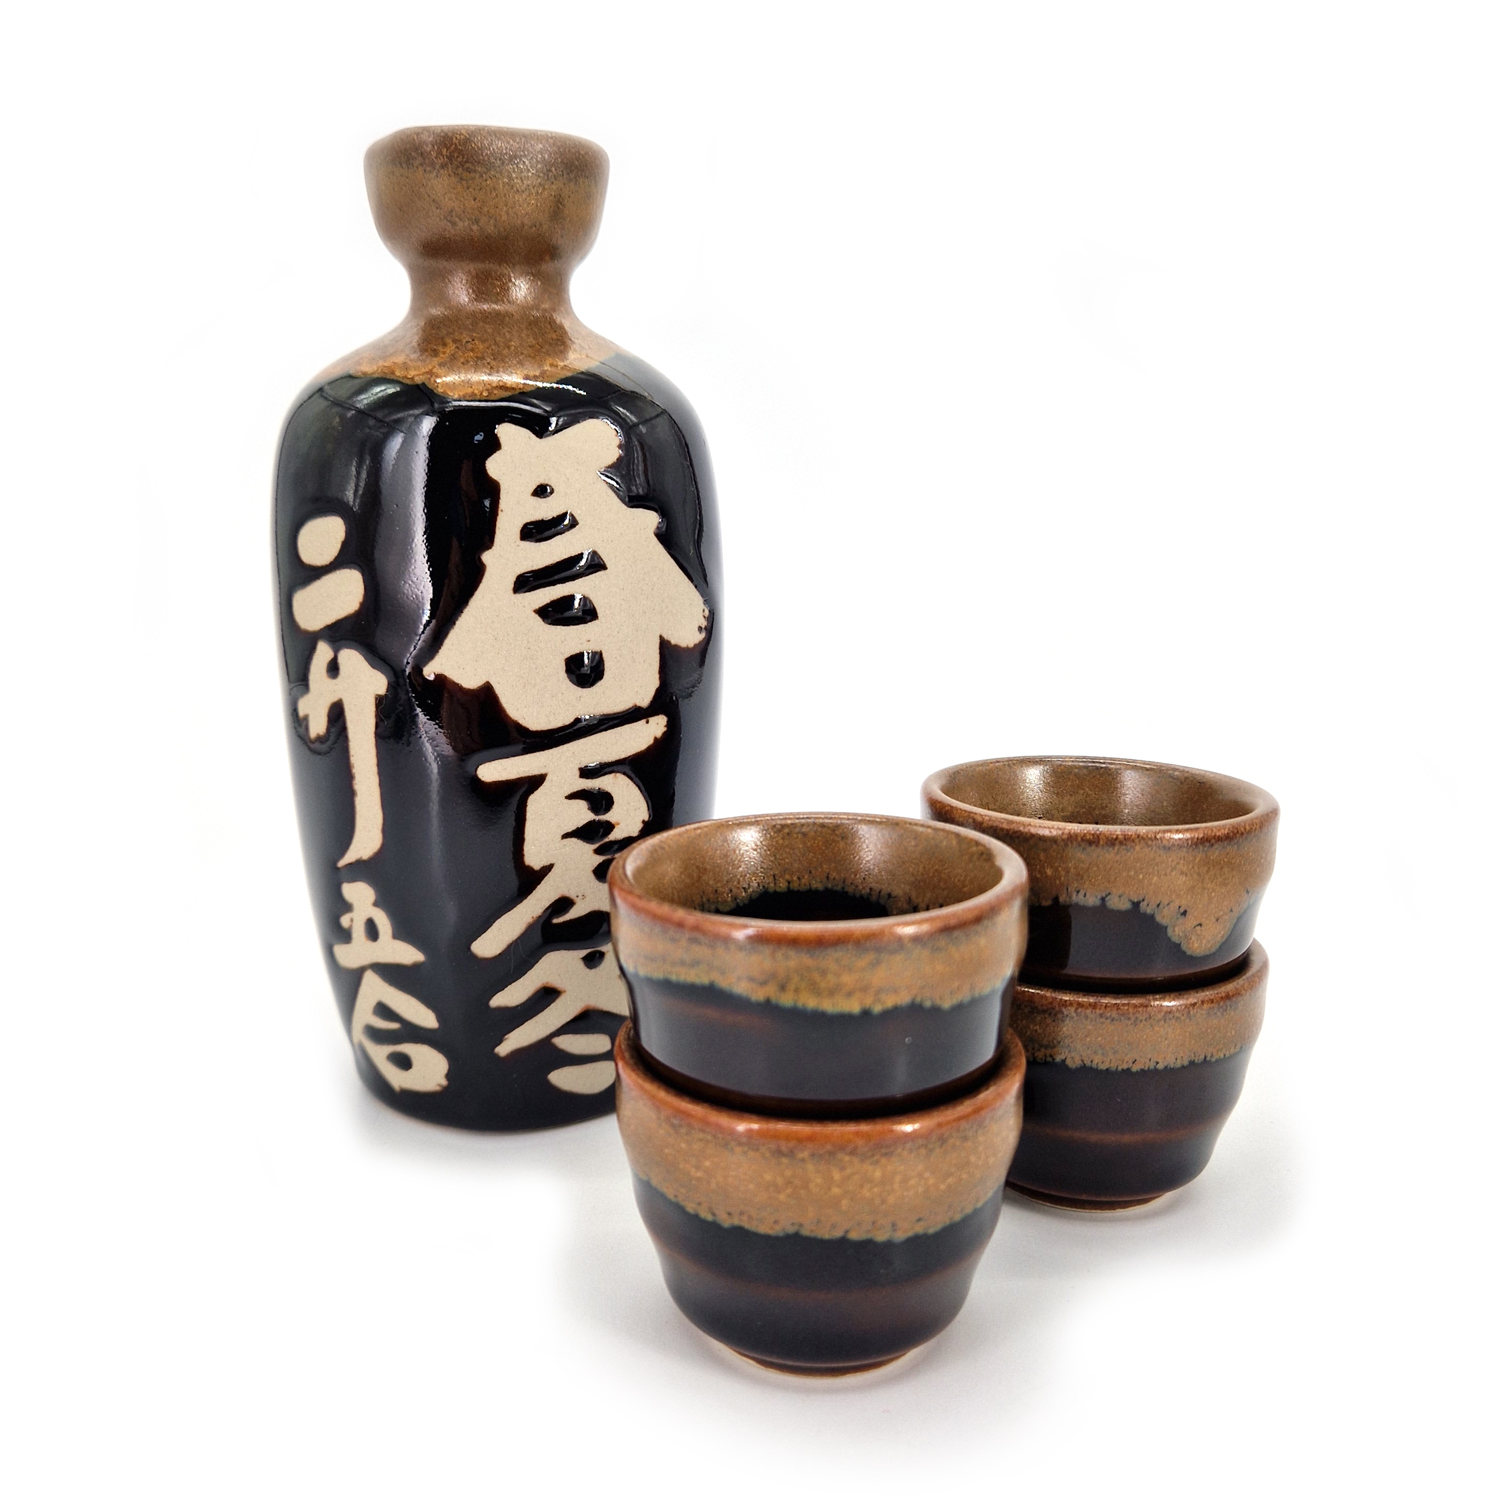 Tasses et récipients traditionnels utilisés au Japon pour boire du saké